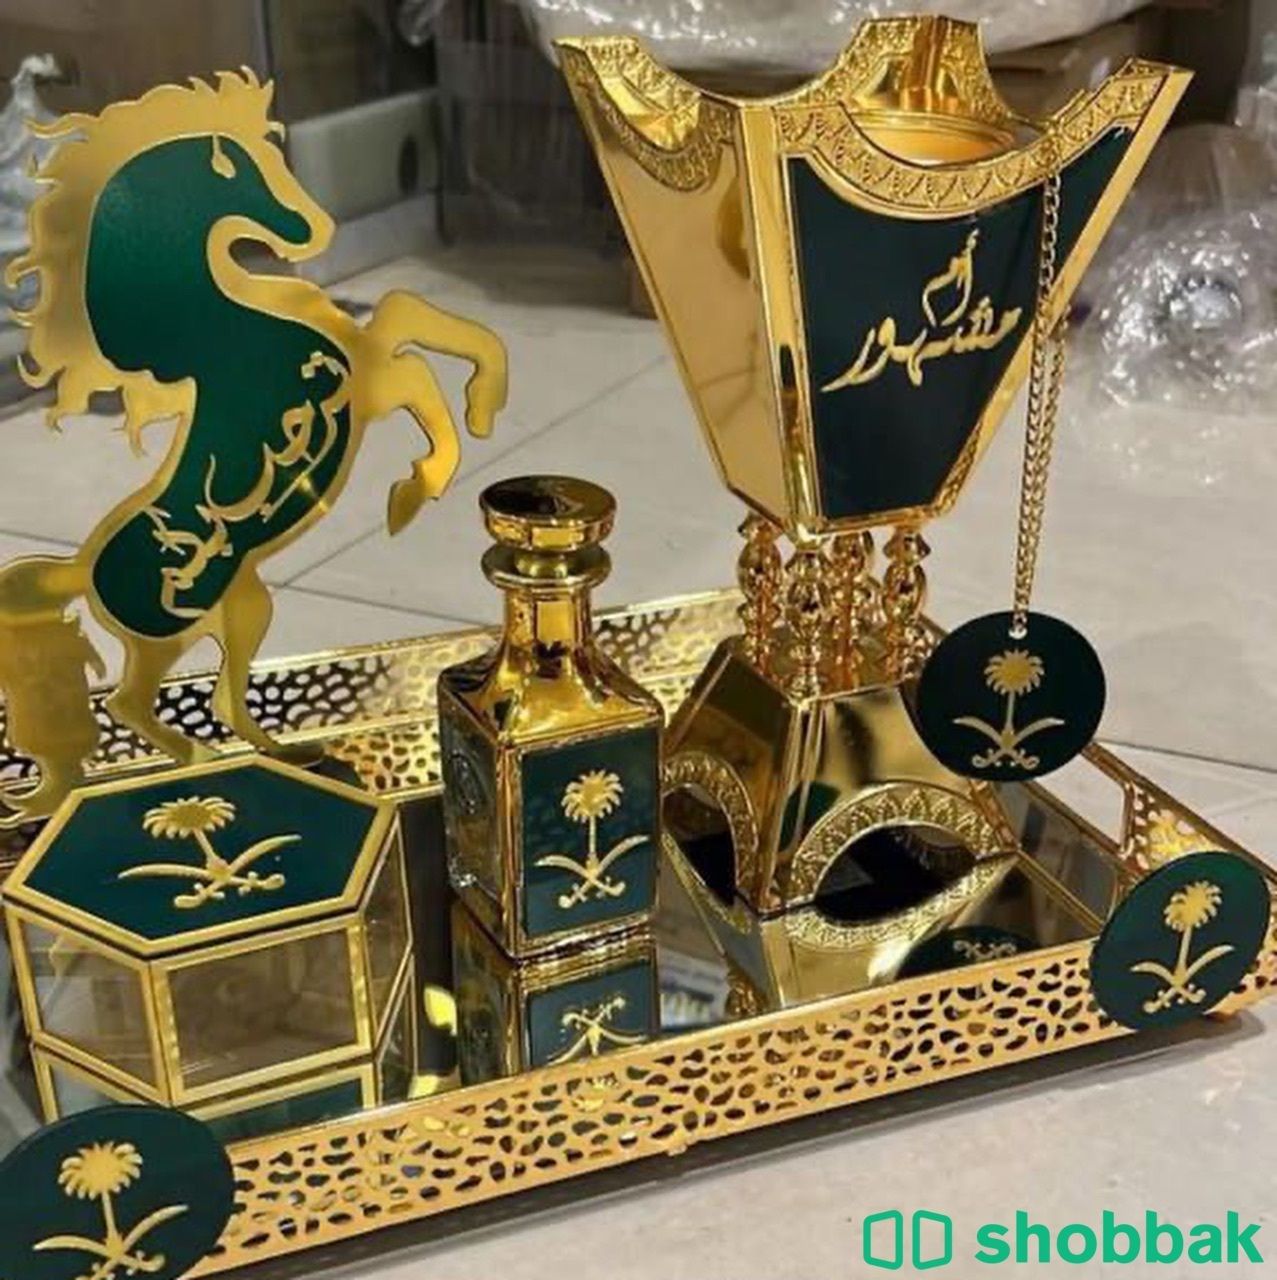 طقم مبخرة فاخرة مع الاسم والعبارة Shobbak Saudi Arabia